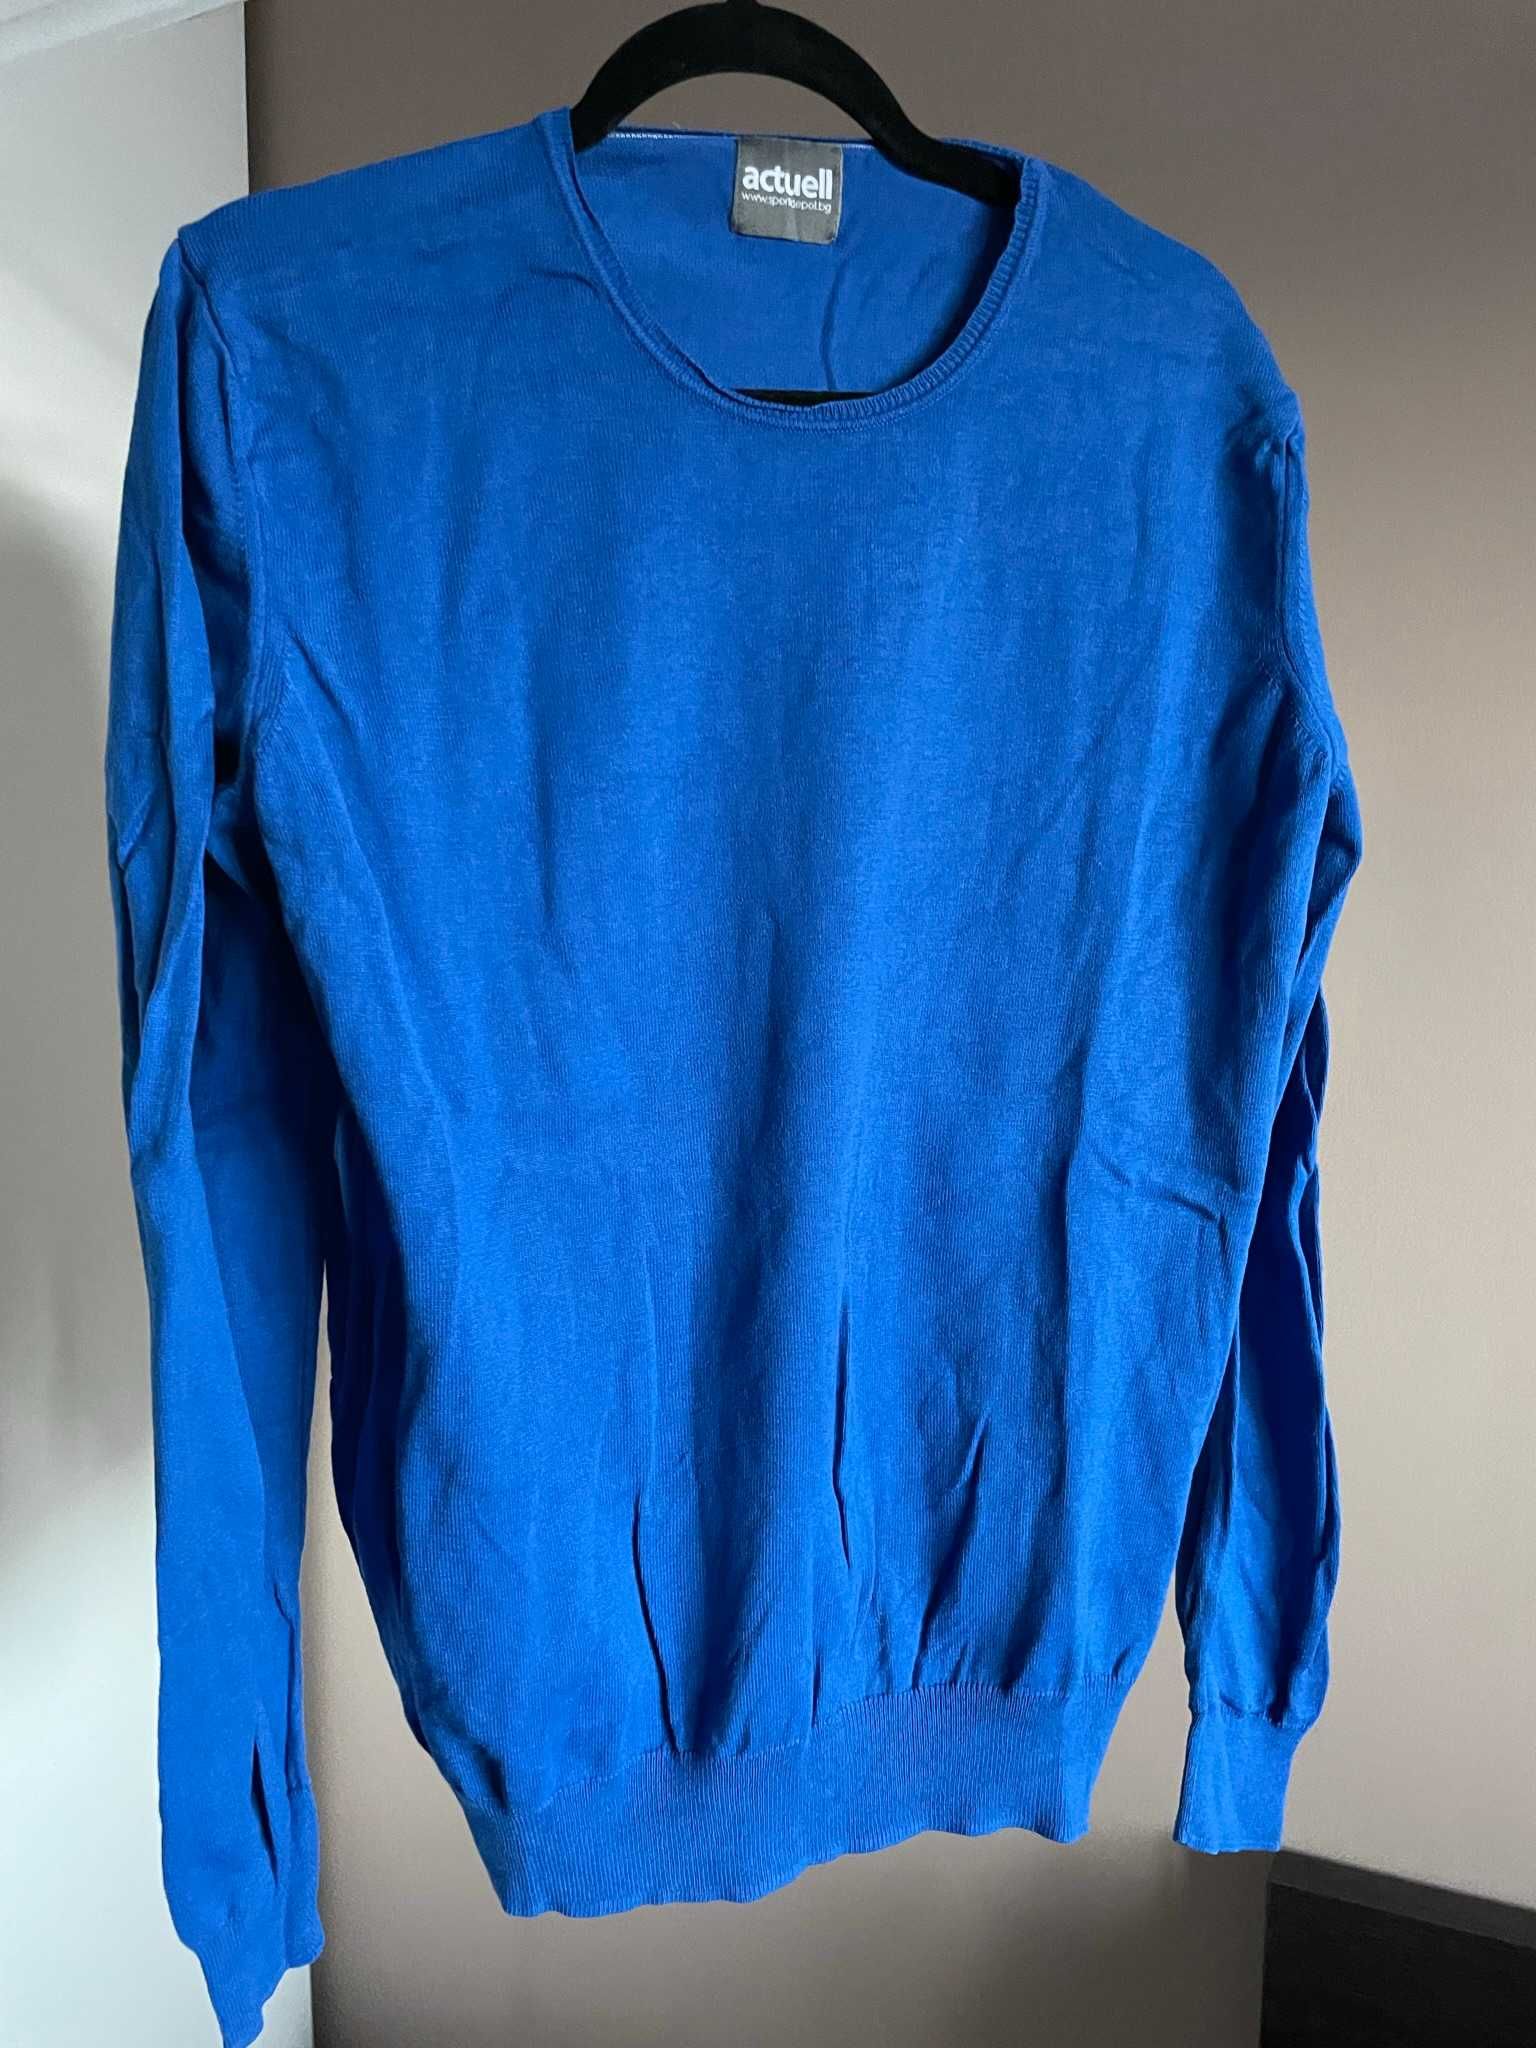 Комплект от два мъжки сини памучни пуловери, размер L